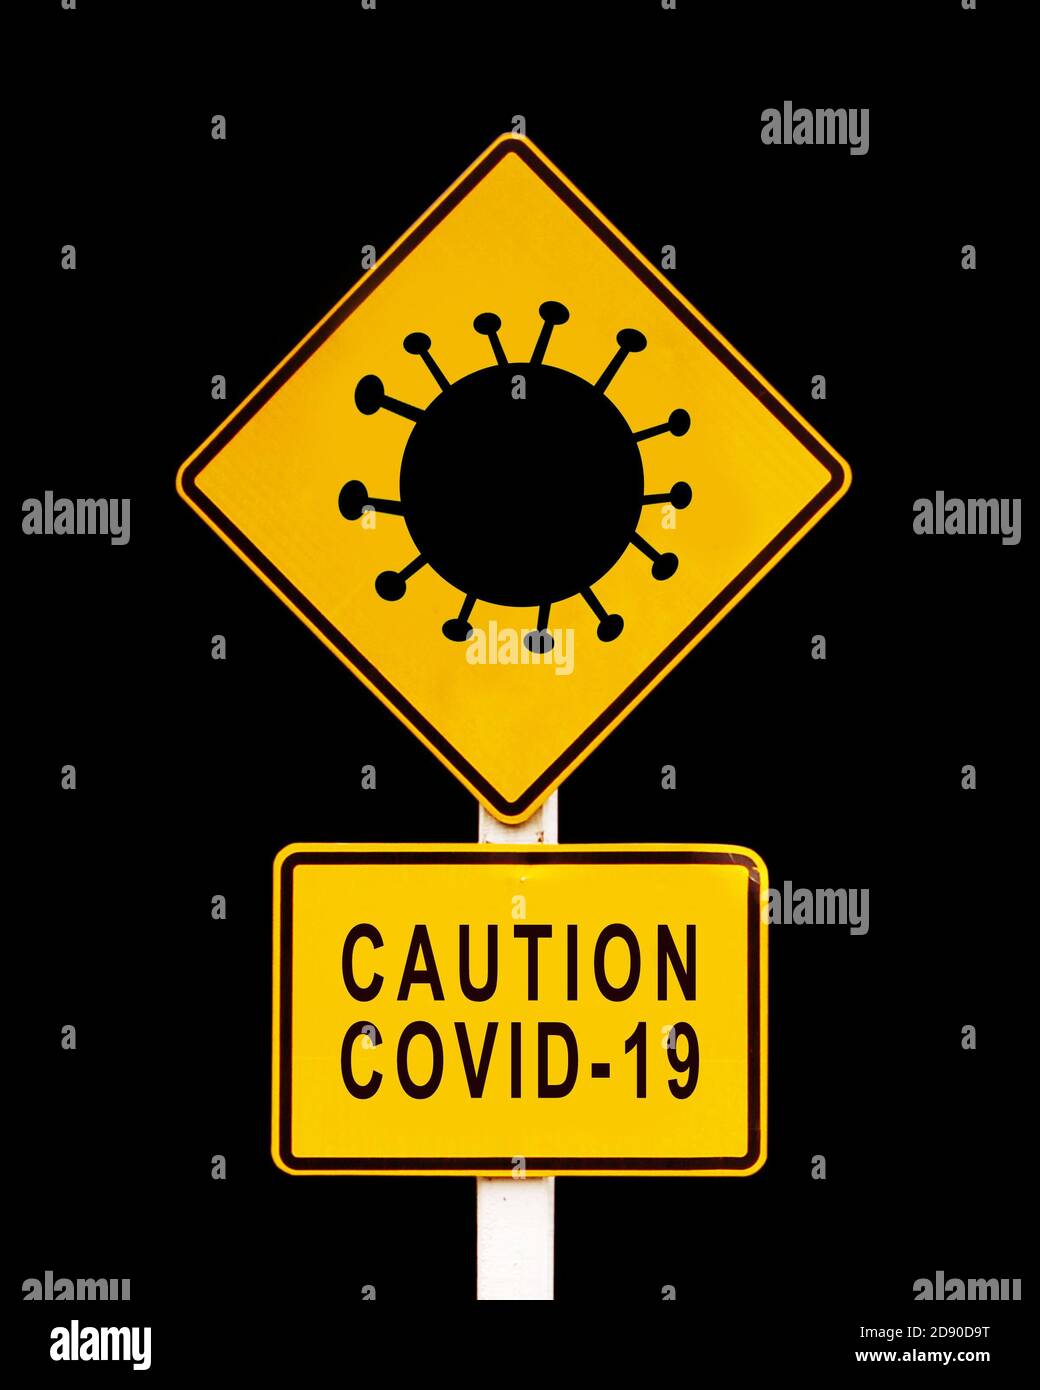 Precaución Covid-19 escrito en una señal amarilla de advertencia de peligro. Coronavirus, concepto de covid pandémica Foto de stock